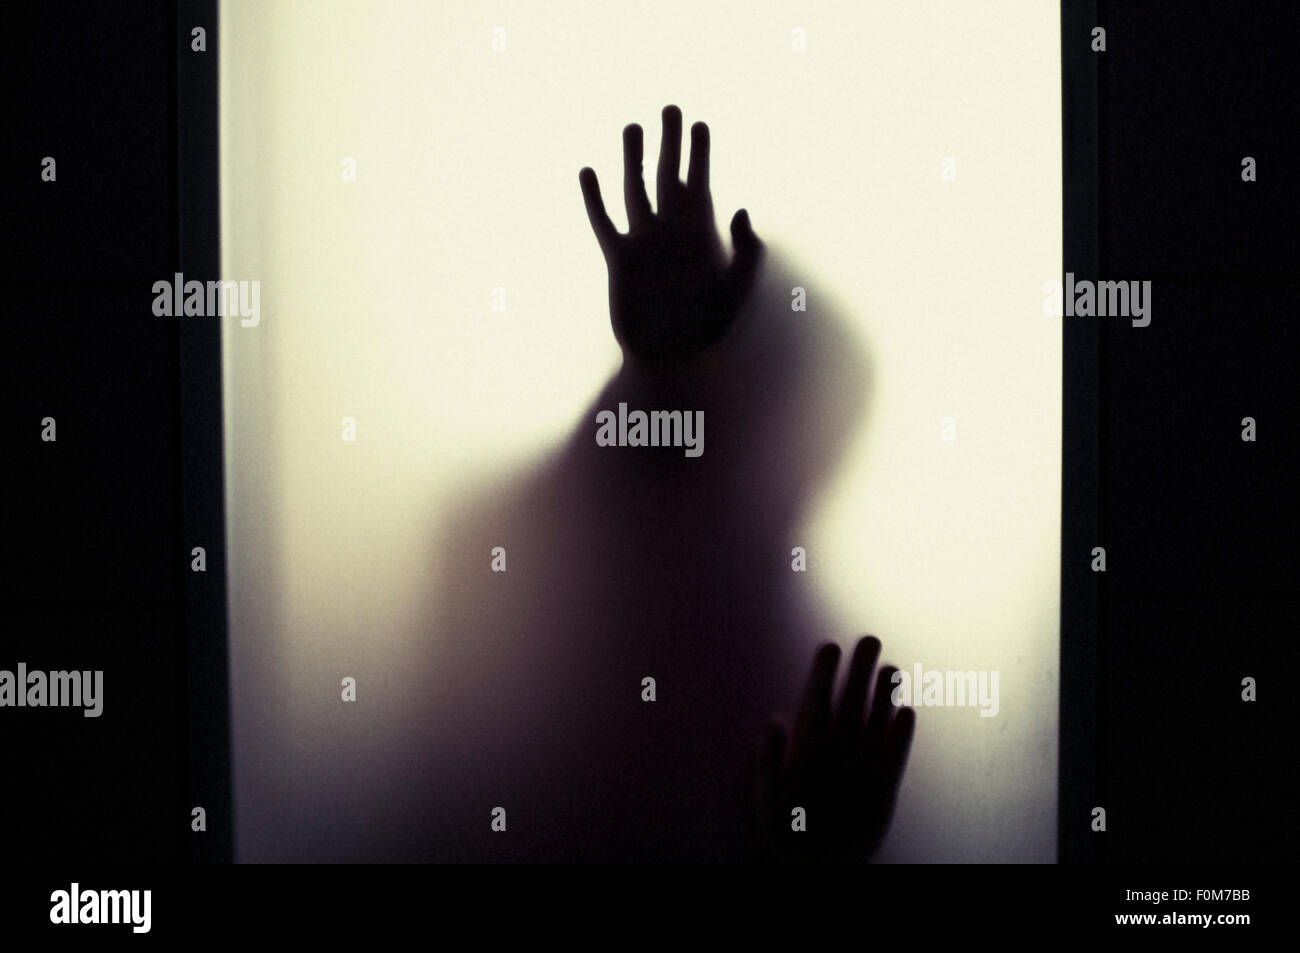 Silhouette di un bambino piccolo che tiene in alto le mani. Immagine concettuale dell'infanzia paure, abuso e la sicurezza dei bambini. Foto Stock